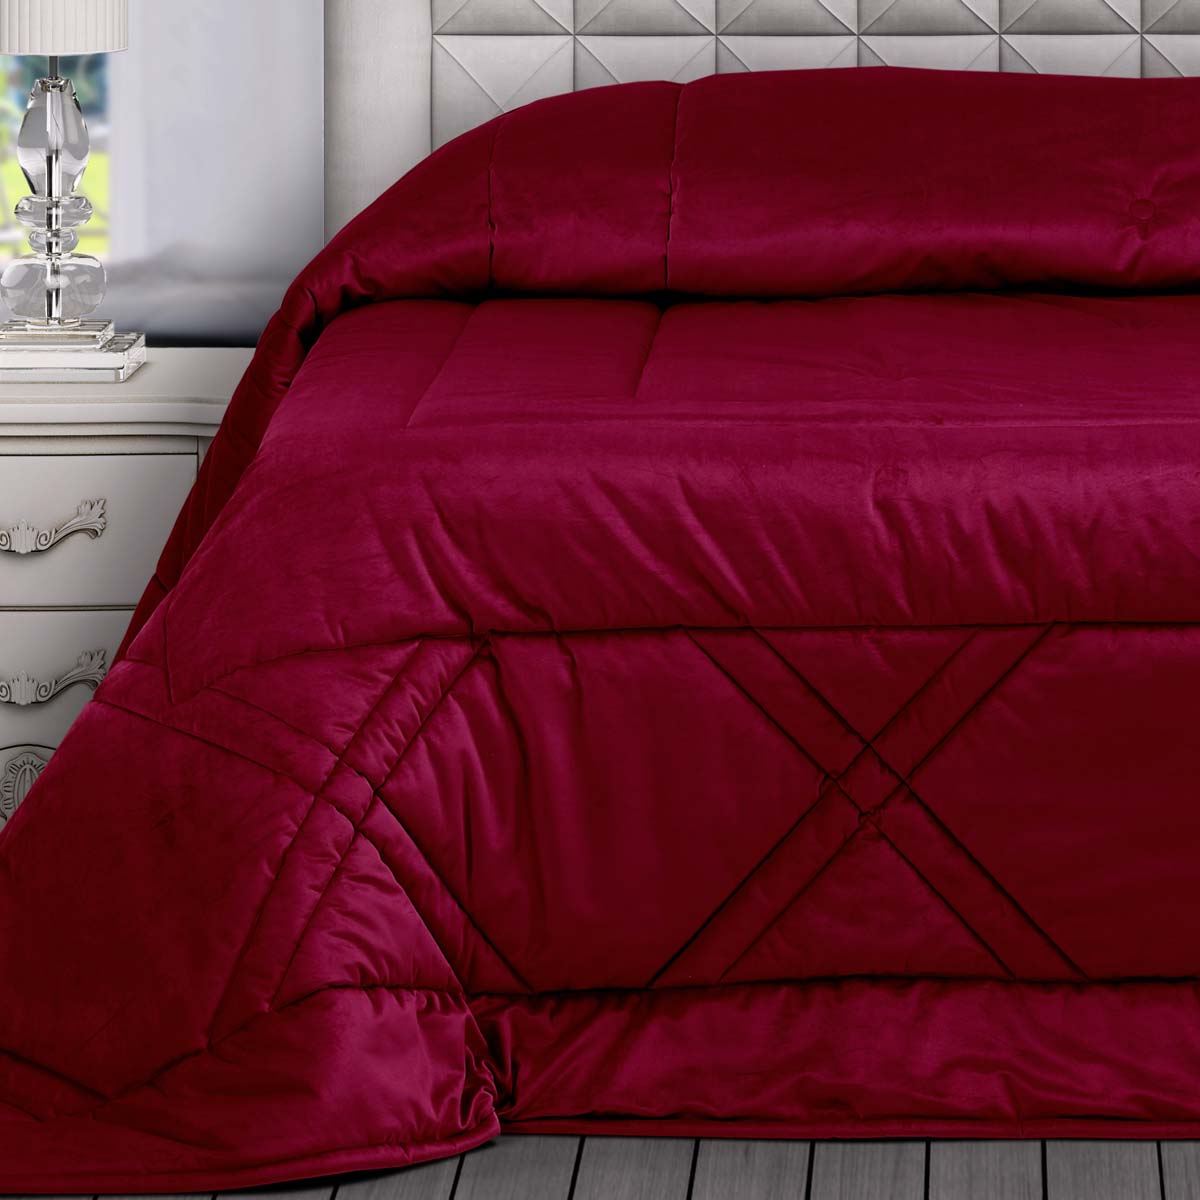 Trapunta letto matrimoniale di colore viola cardinale moderna in velluto con disegno geometrico a Rombi